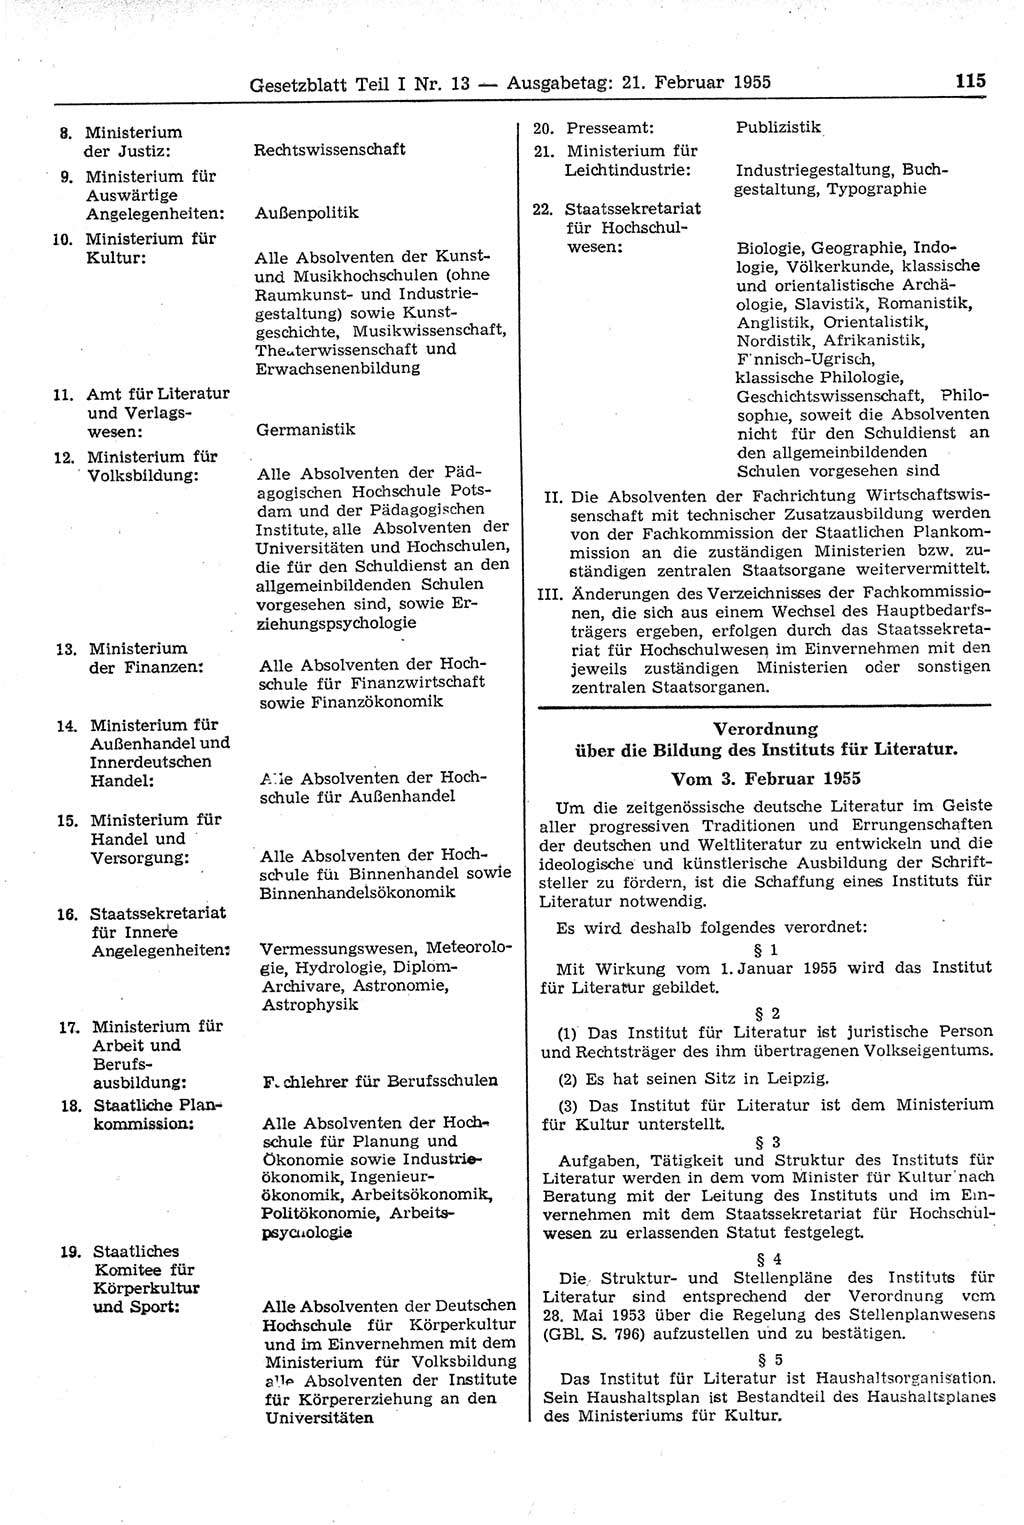 Gesetzblatt (GBl.) der Deutschen Demokratischen Republik (DDR) Teil Ⅰ 1955, Seite 115 (GBl. DDR Ⅰ 1955, S. 115)